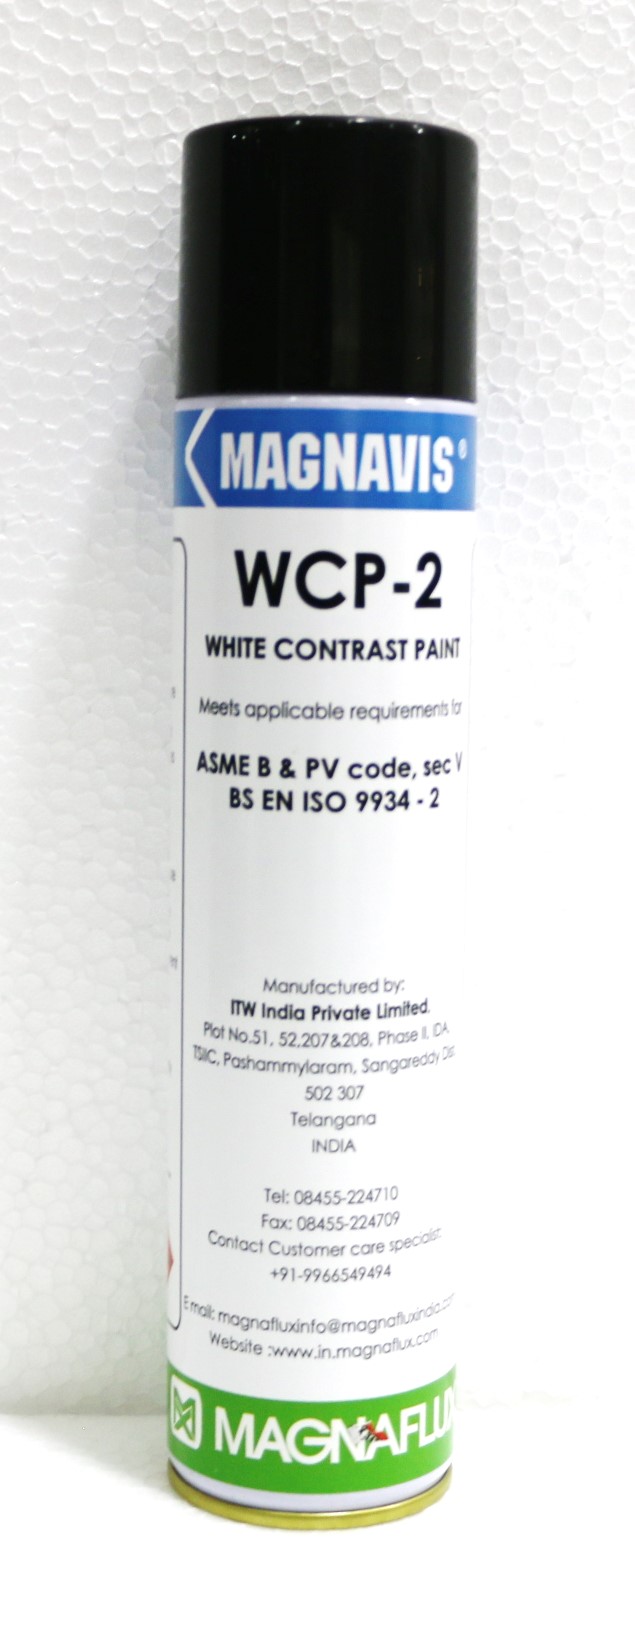 WCP-2